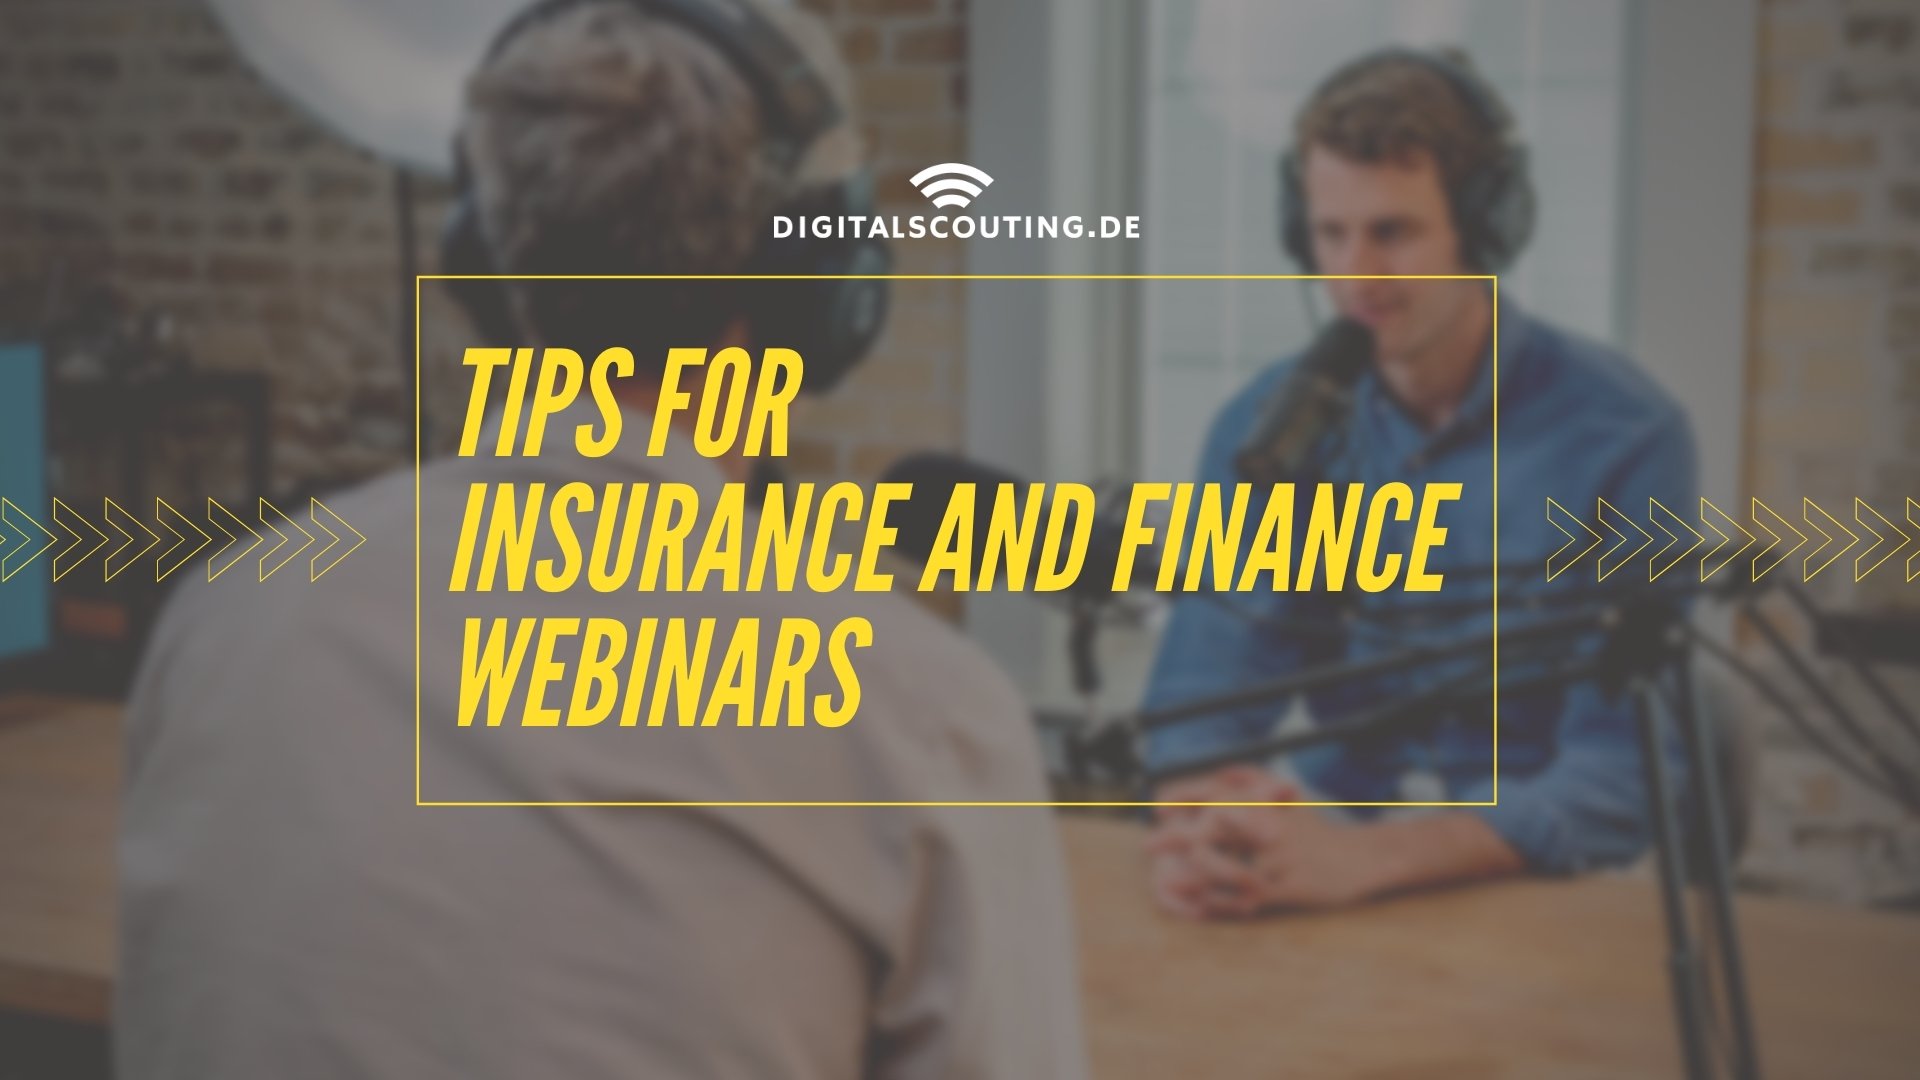 Tips for Insurance and Finance Webinars